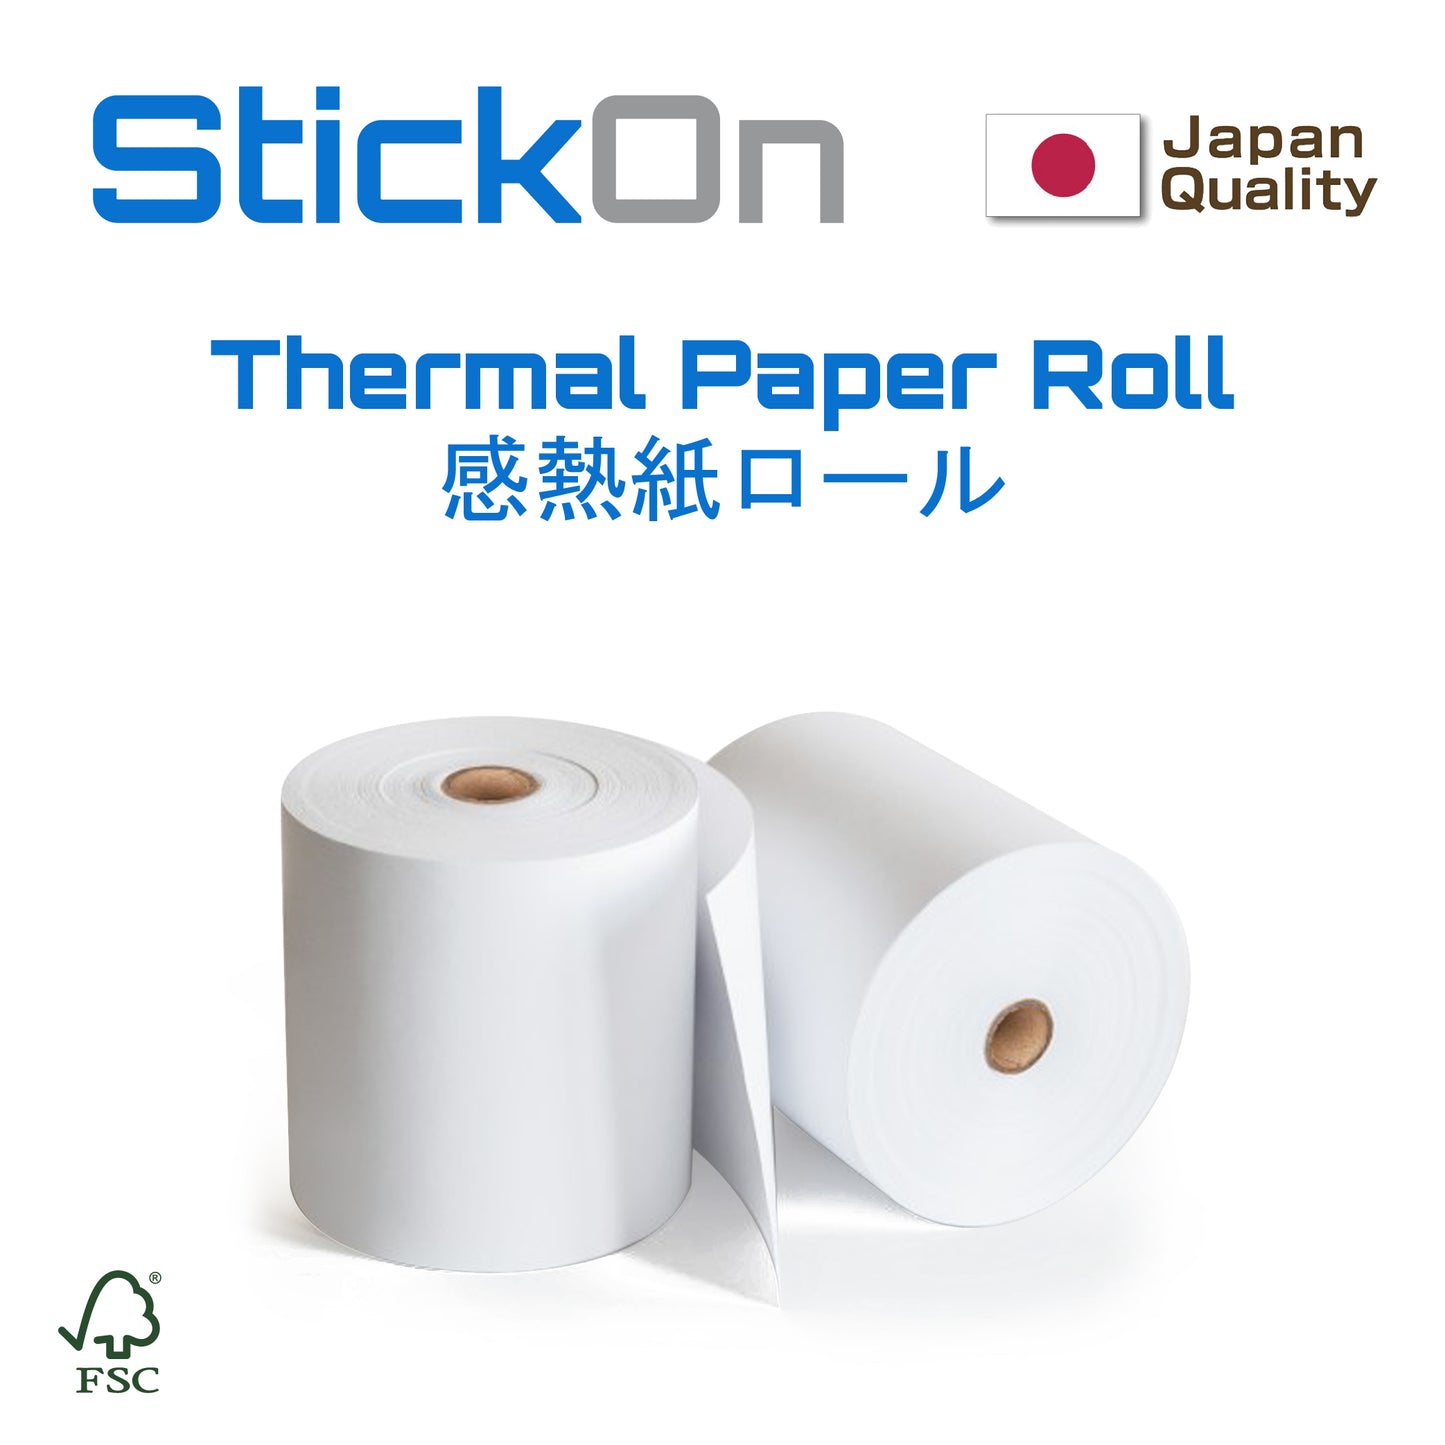 Thermal Receipt Paper 80mm x 60mm x 12mm [100 Rolls]